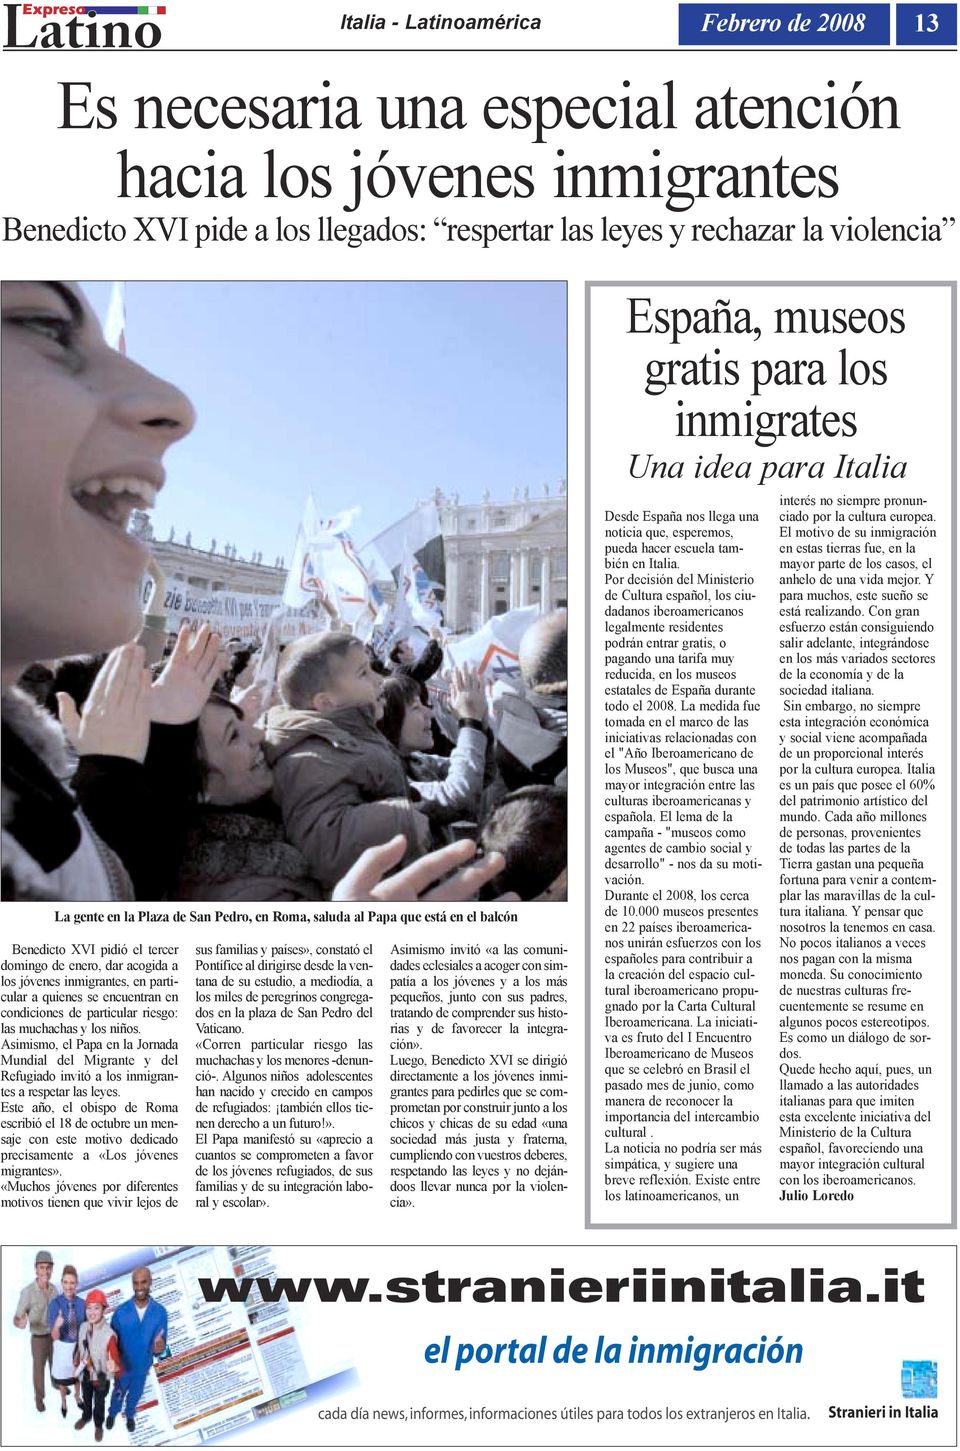 condiciones de particular riesgo: las muchachas y los niños. Asimismo, el Papa en la Jornada Mundial del Migrante y del Refugiado invitó a los inmigrantes a respetar las leyes.